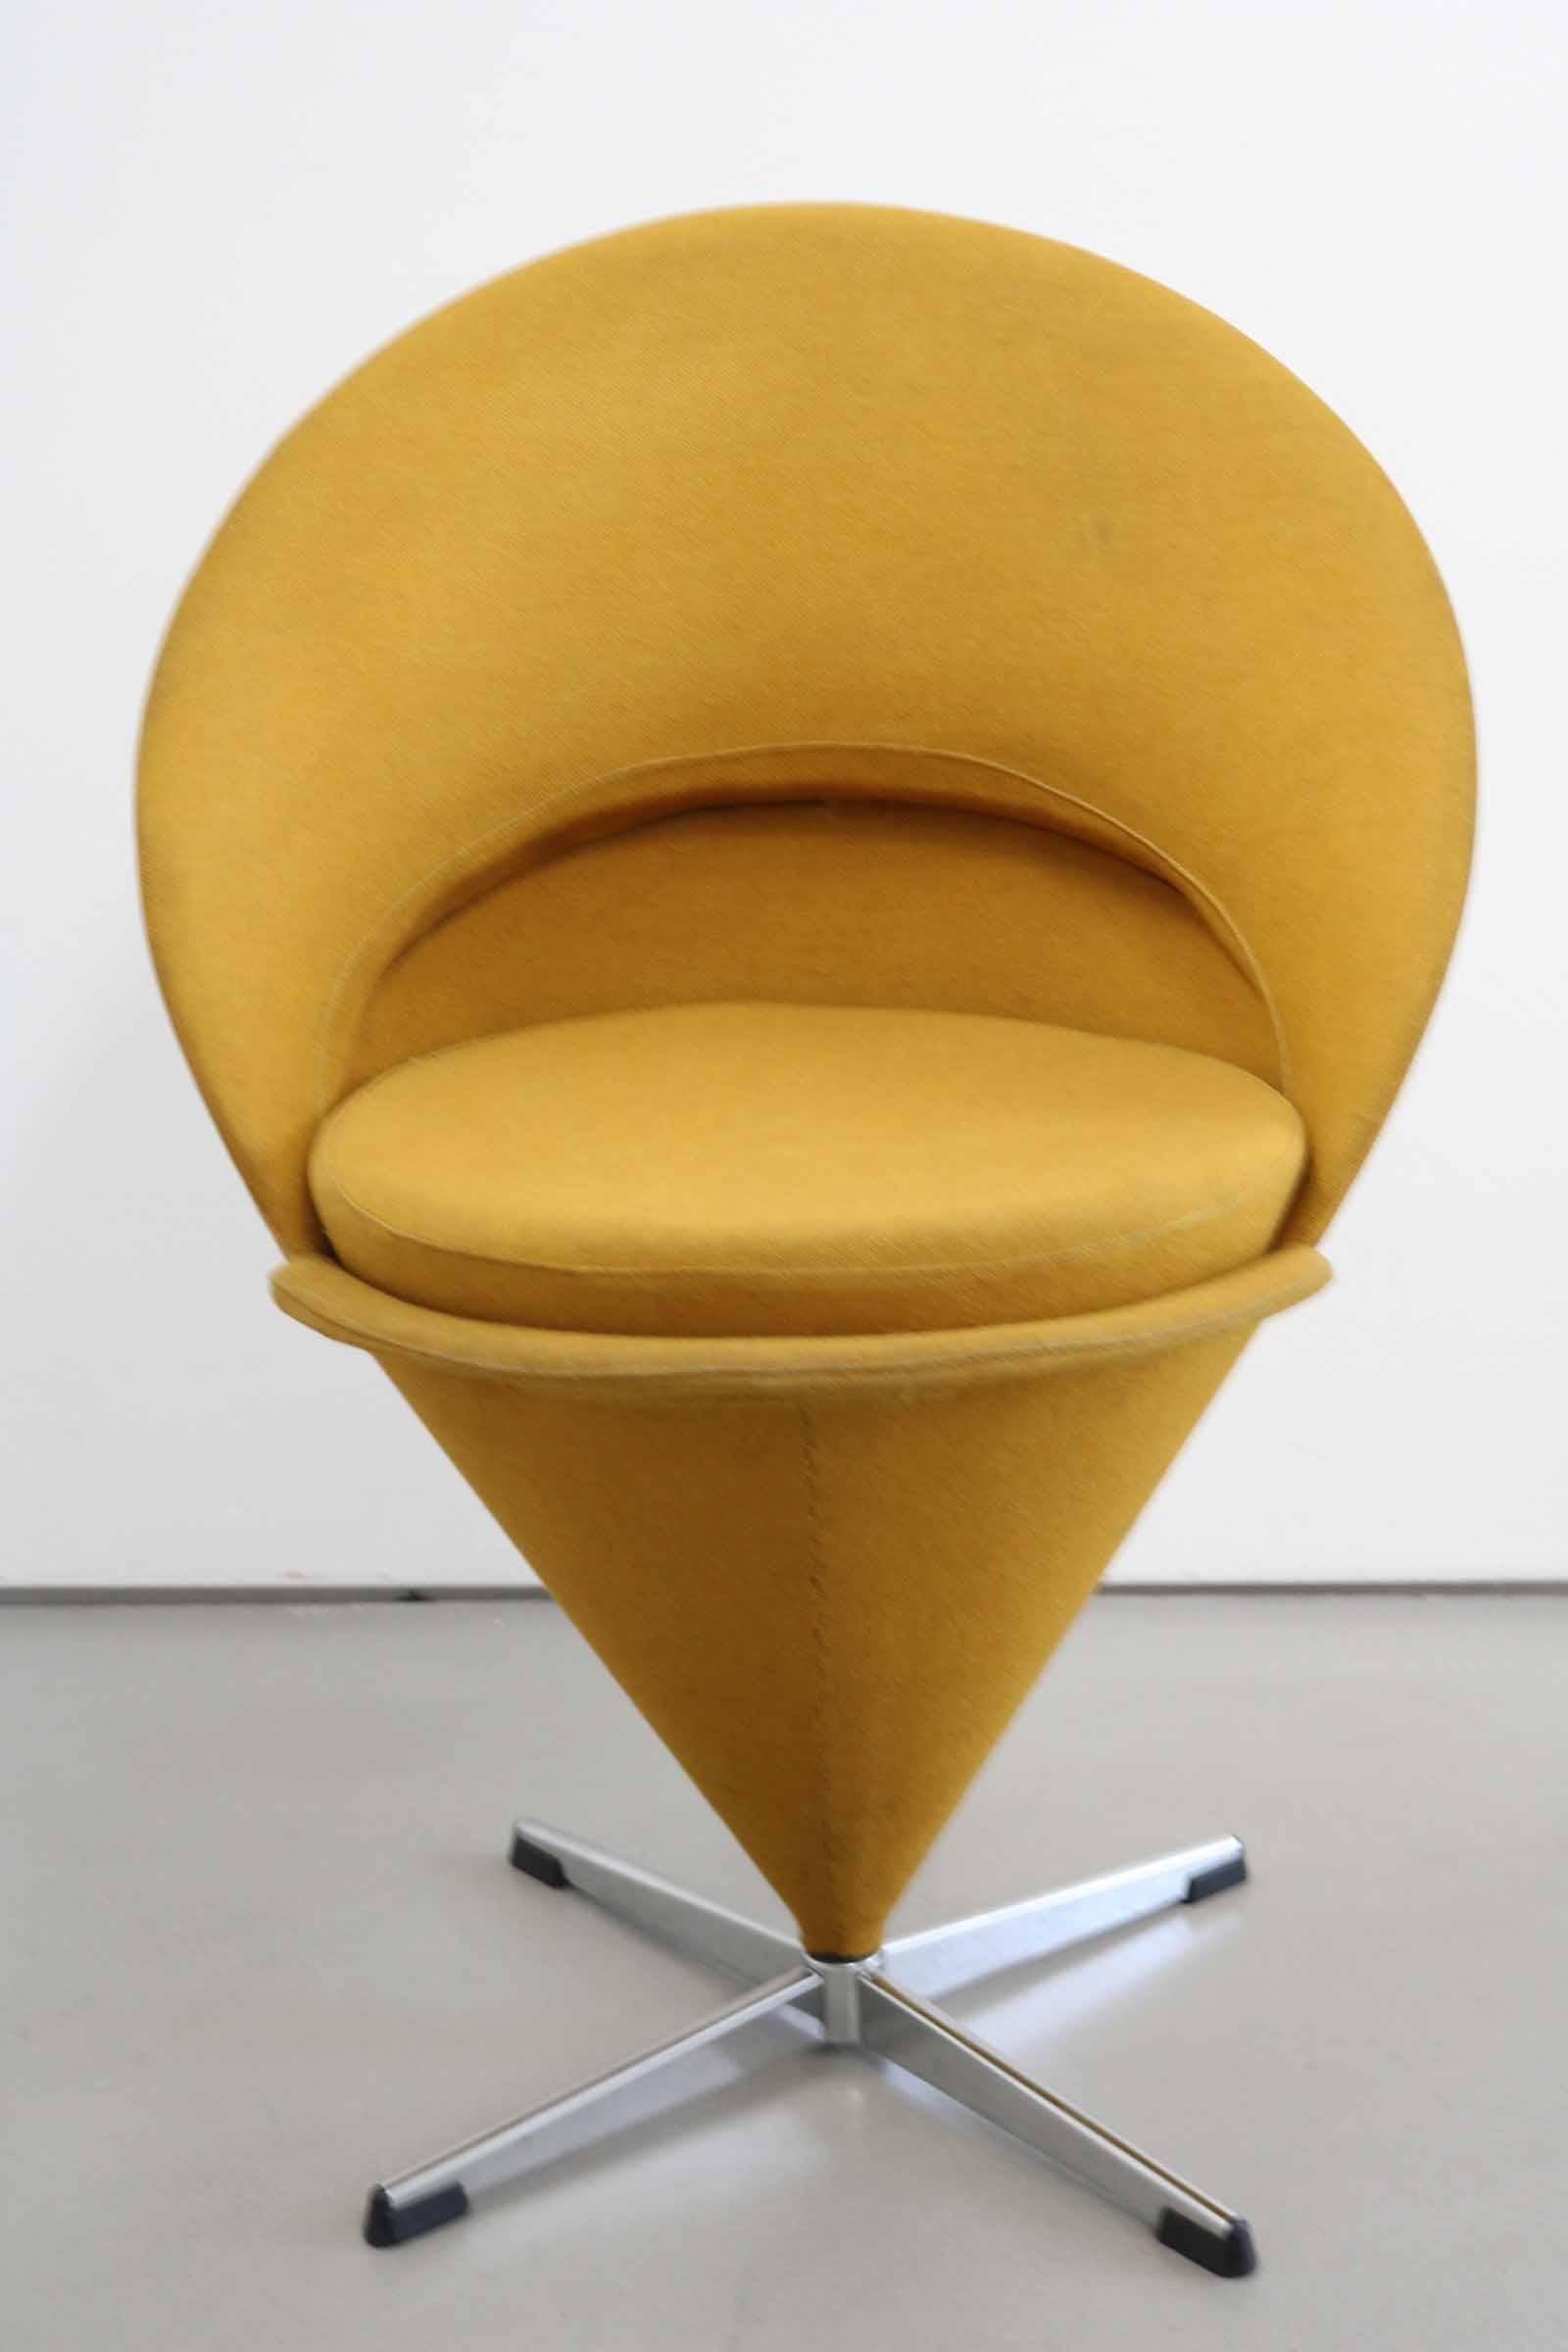 Chaise conique de Verner Panton pour Plus-Linje en tissu original des années 60, couleur moutarde. Le tissu est dans son état d'origine et ne présente que des signes mineurs d'utilisation, notamment de très petites taches légères.